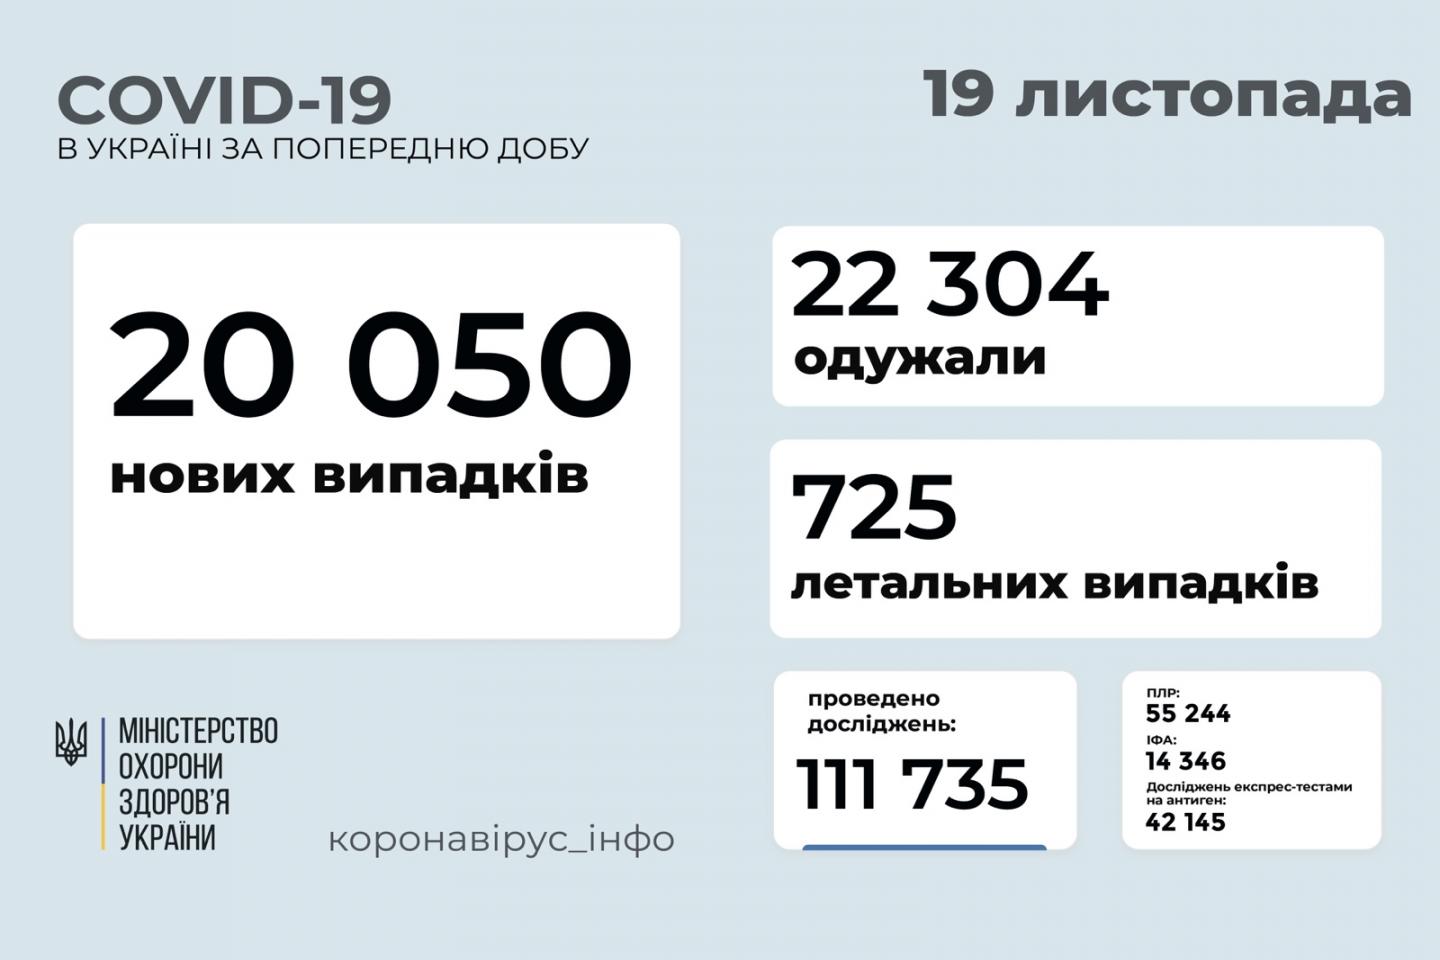 http://dunrada.gov.ua/uploadfile/archive_news/2021/11/19/2021-11-19_6461/images/images-91738.jpg